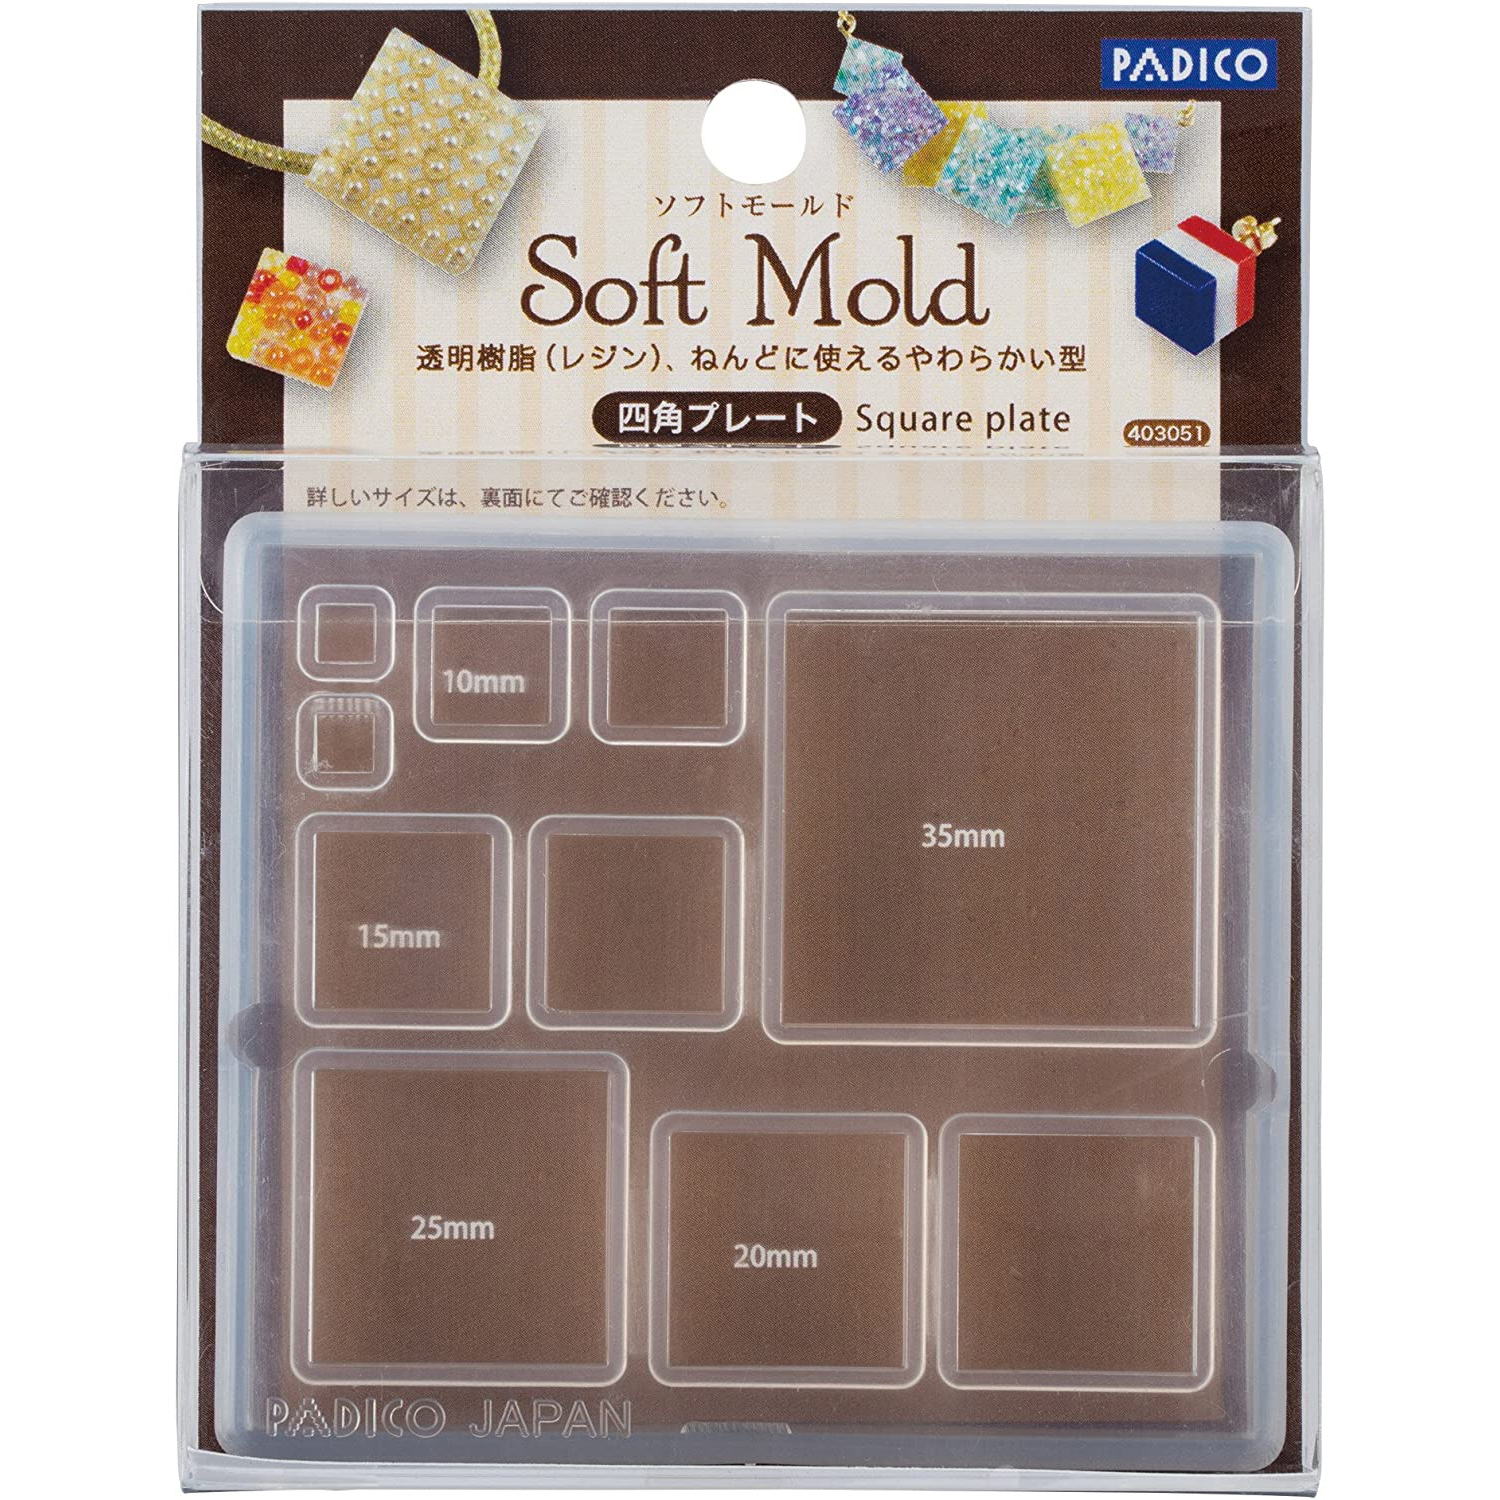 PDC403051 Padico Soft Mold Mini Square Plates (pcs)